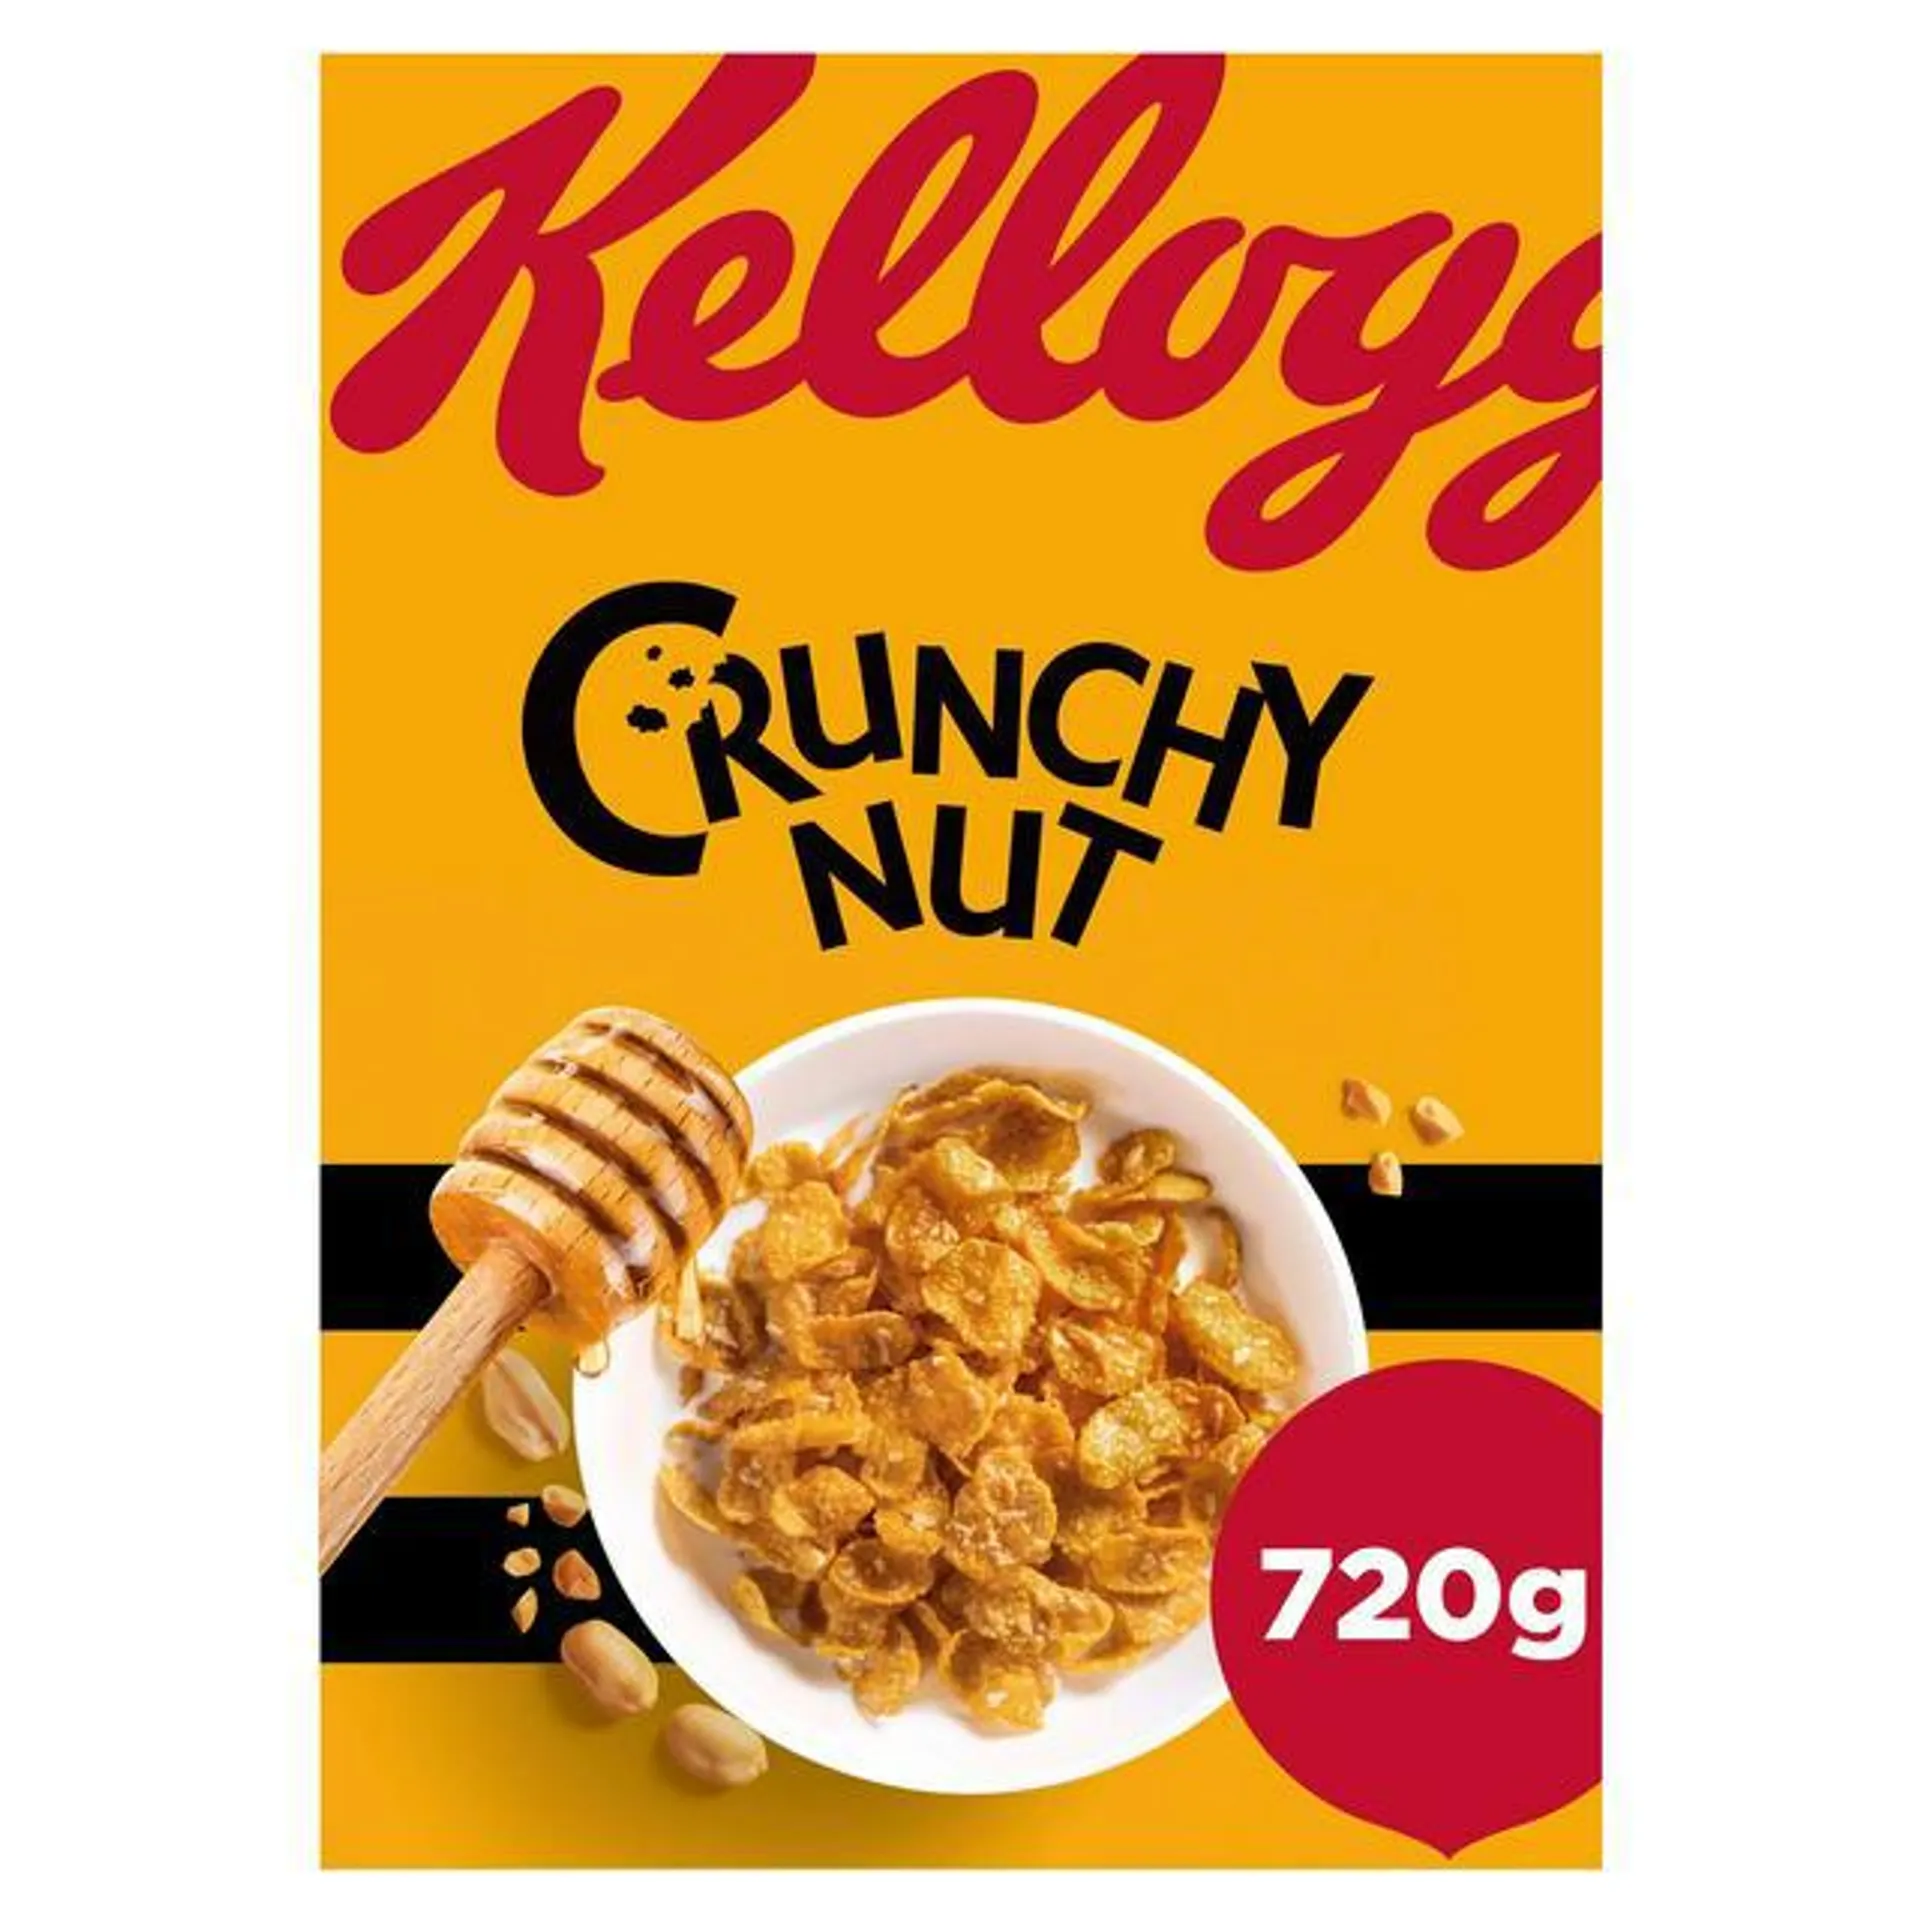 Kellogg's Crunchy Nut Breakfast Cereal 720g